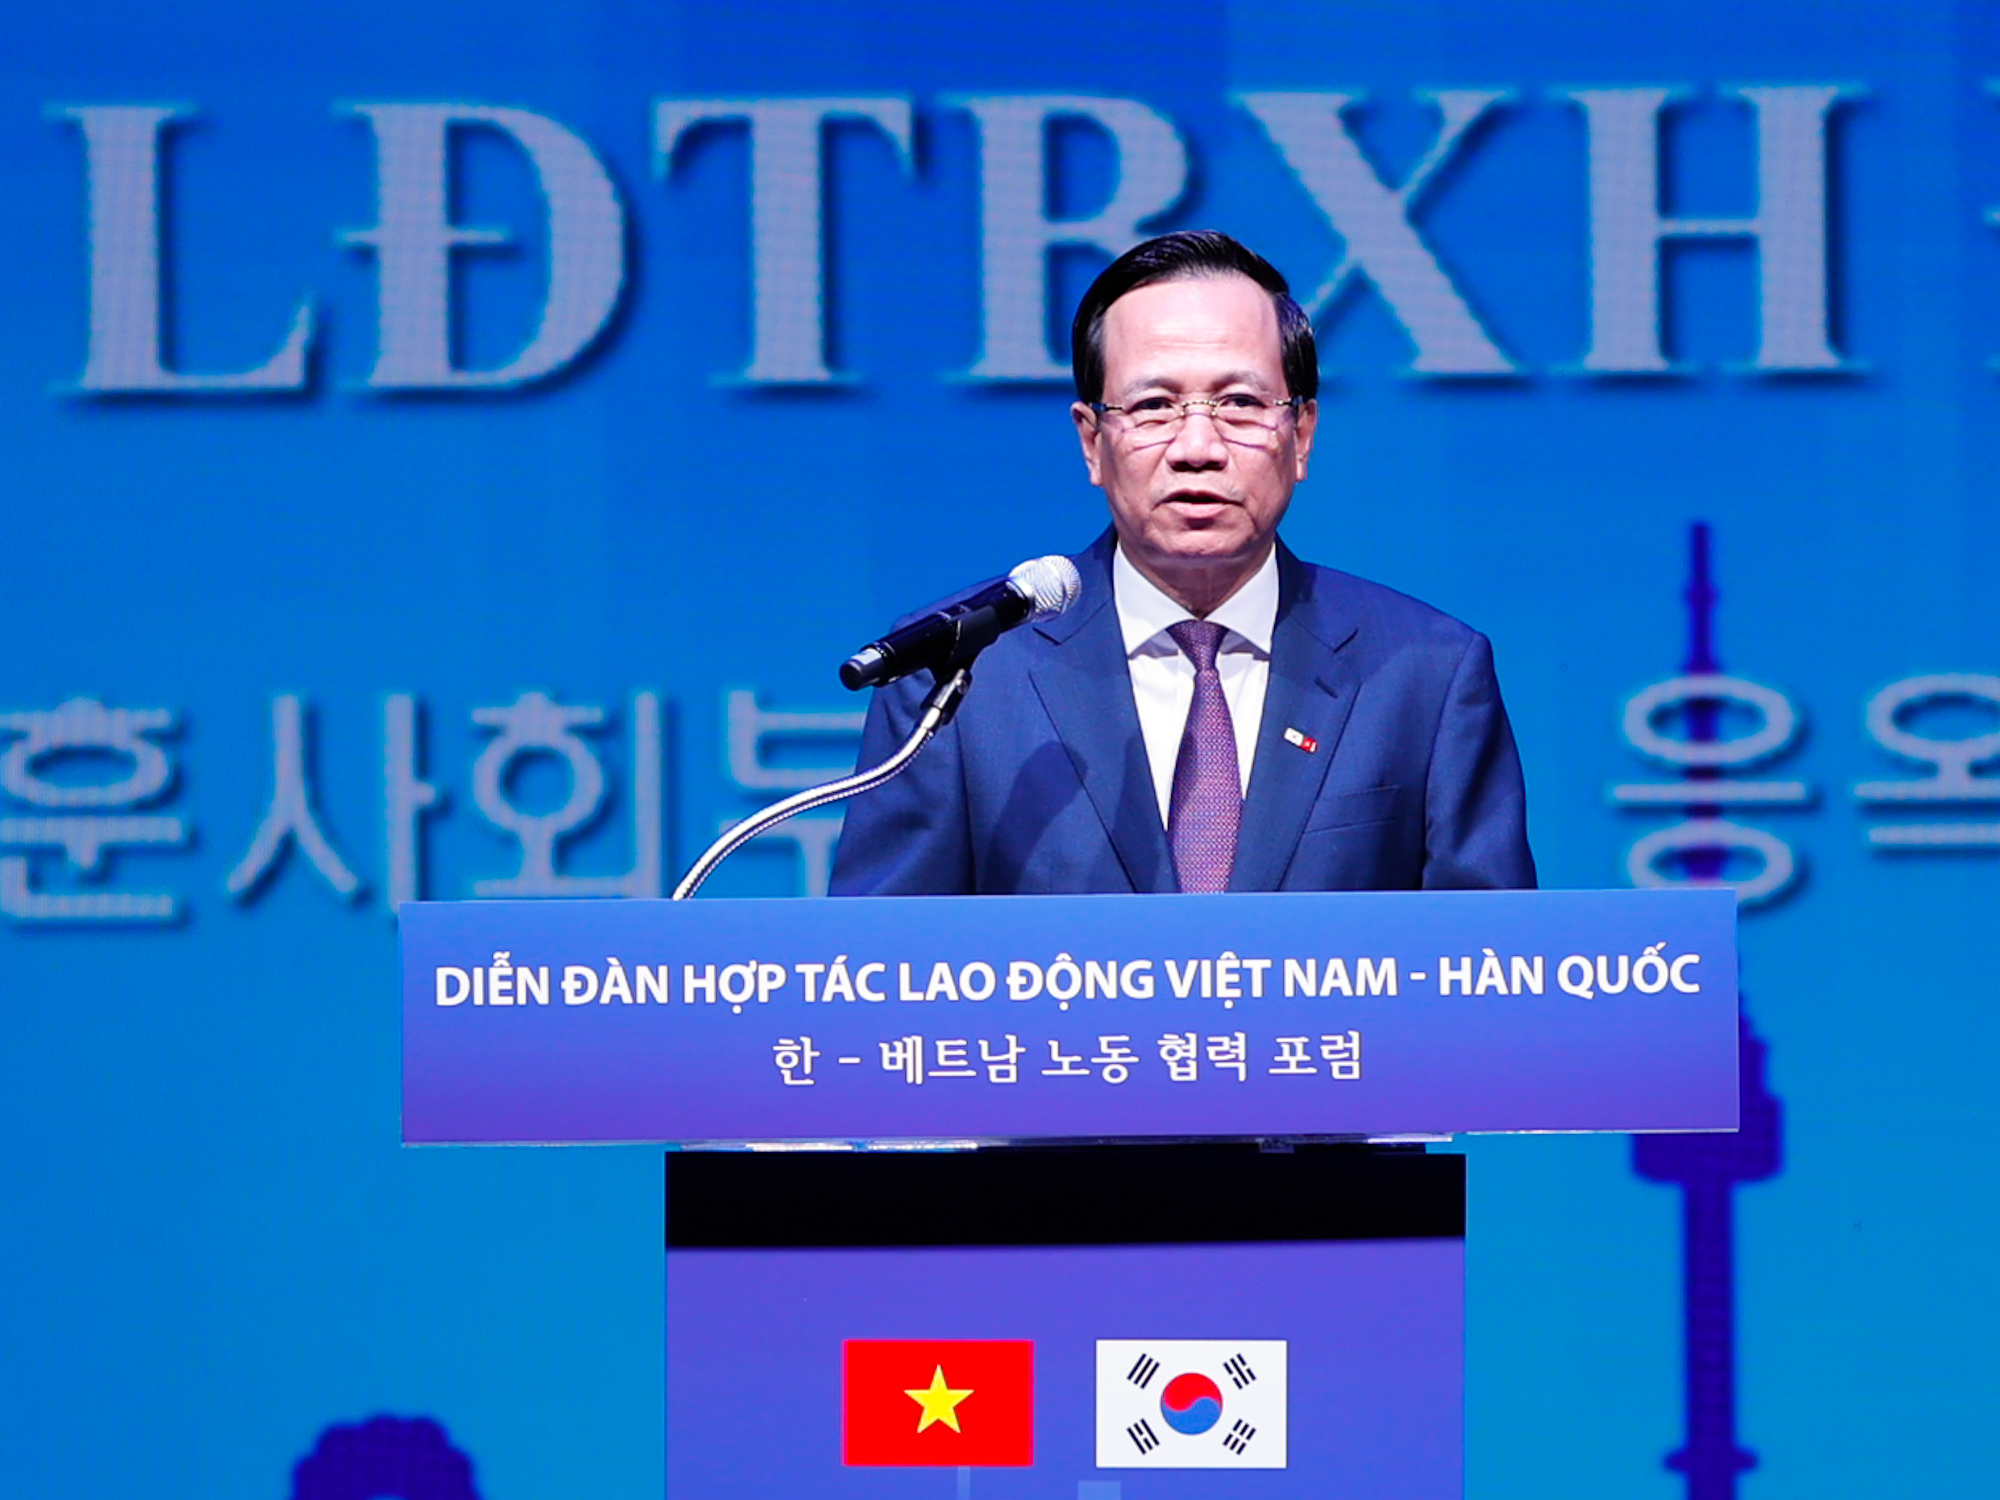 Bộ trưởng Bộ LĐTB&XH Đào Ngọc Dung kỳ vọng quan hệ giữa lao động Việt Nam và Hàn Quốc sẽ tiếp tục mở rộng theo hướng đi vào đào tạo những ngành nghề chuyên môn chất lượng cao, có năng suất, có thu nhập cao hơn... - Ảnh: VGP/Nhật Bắc